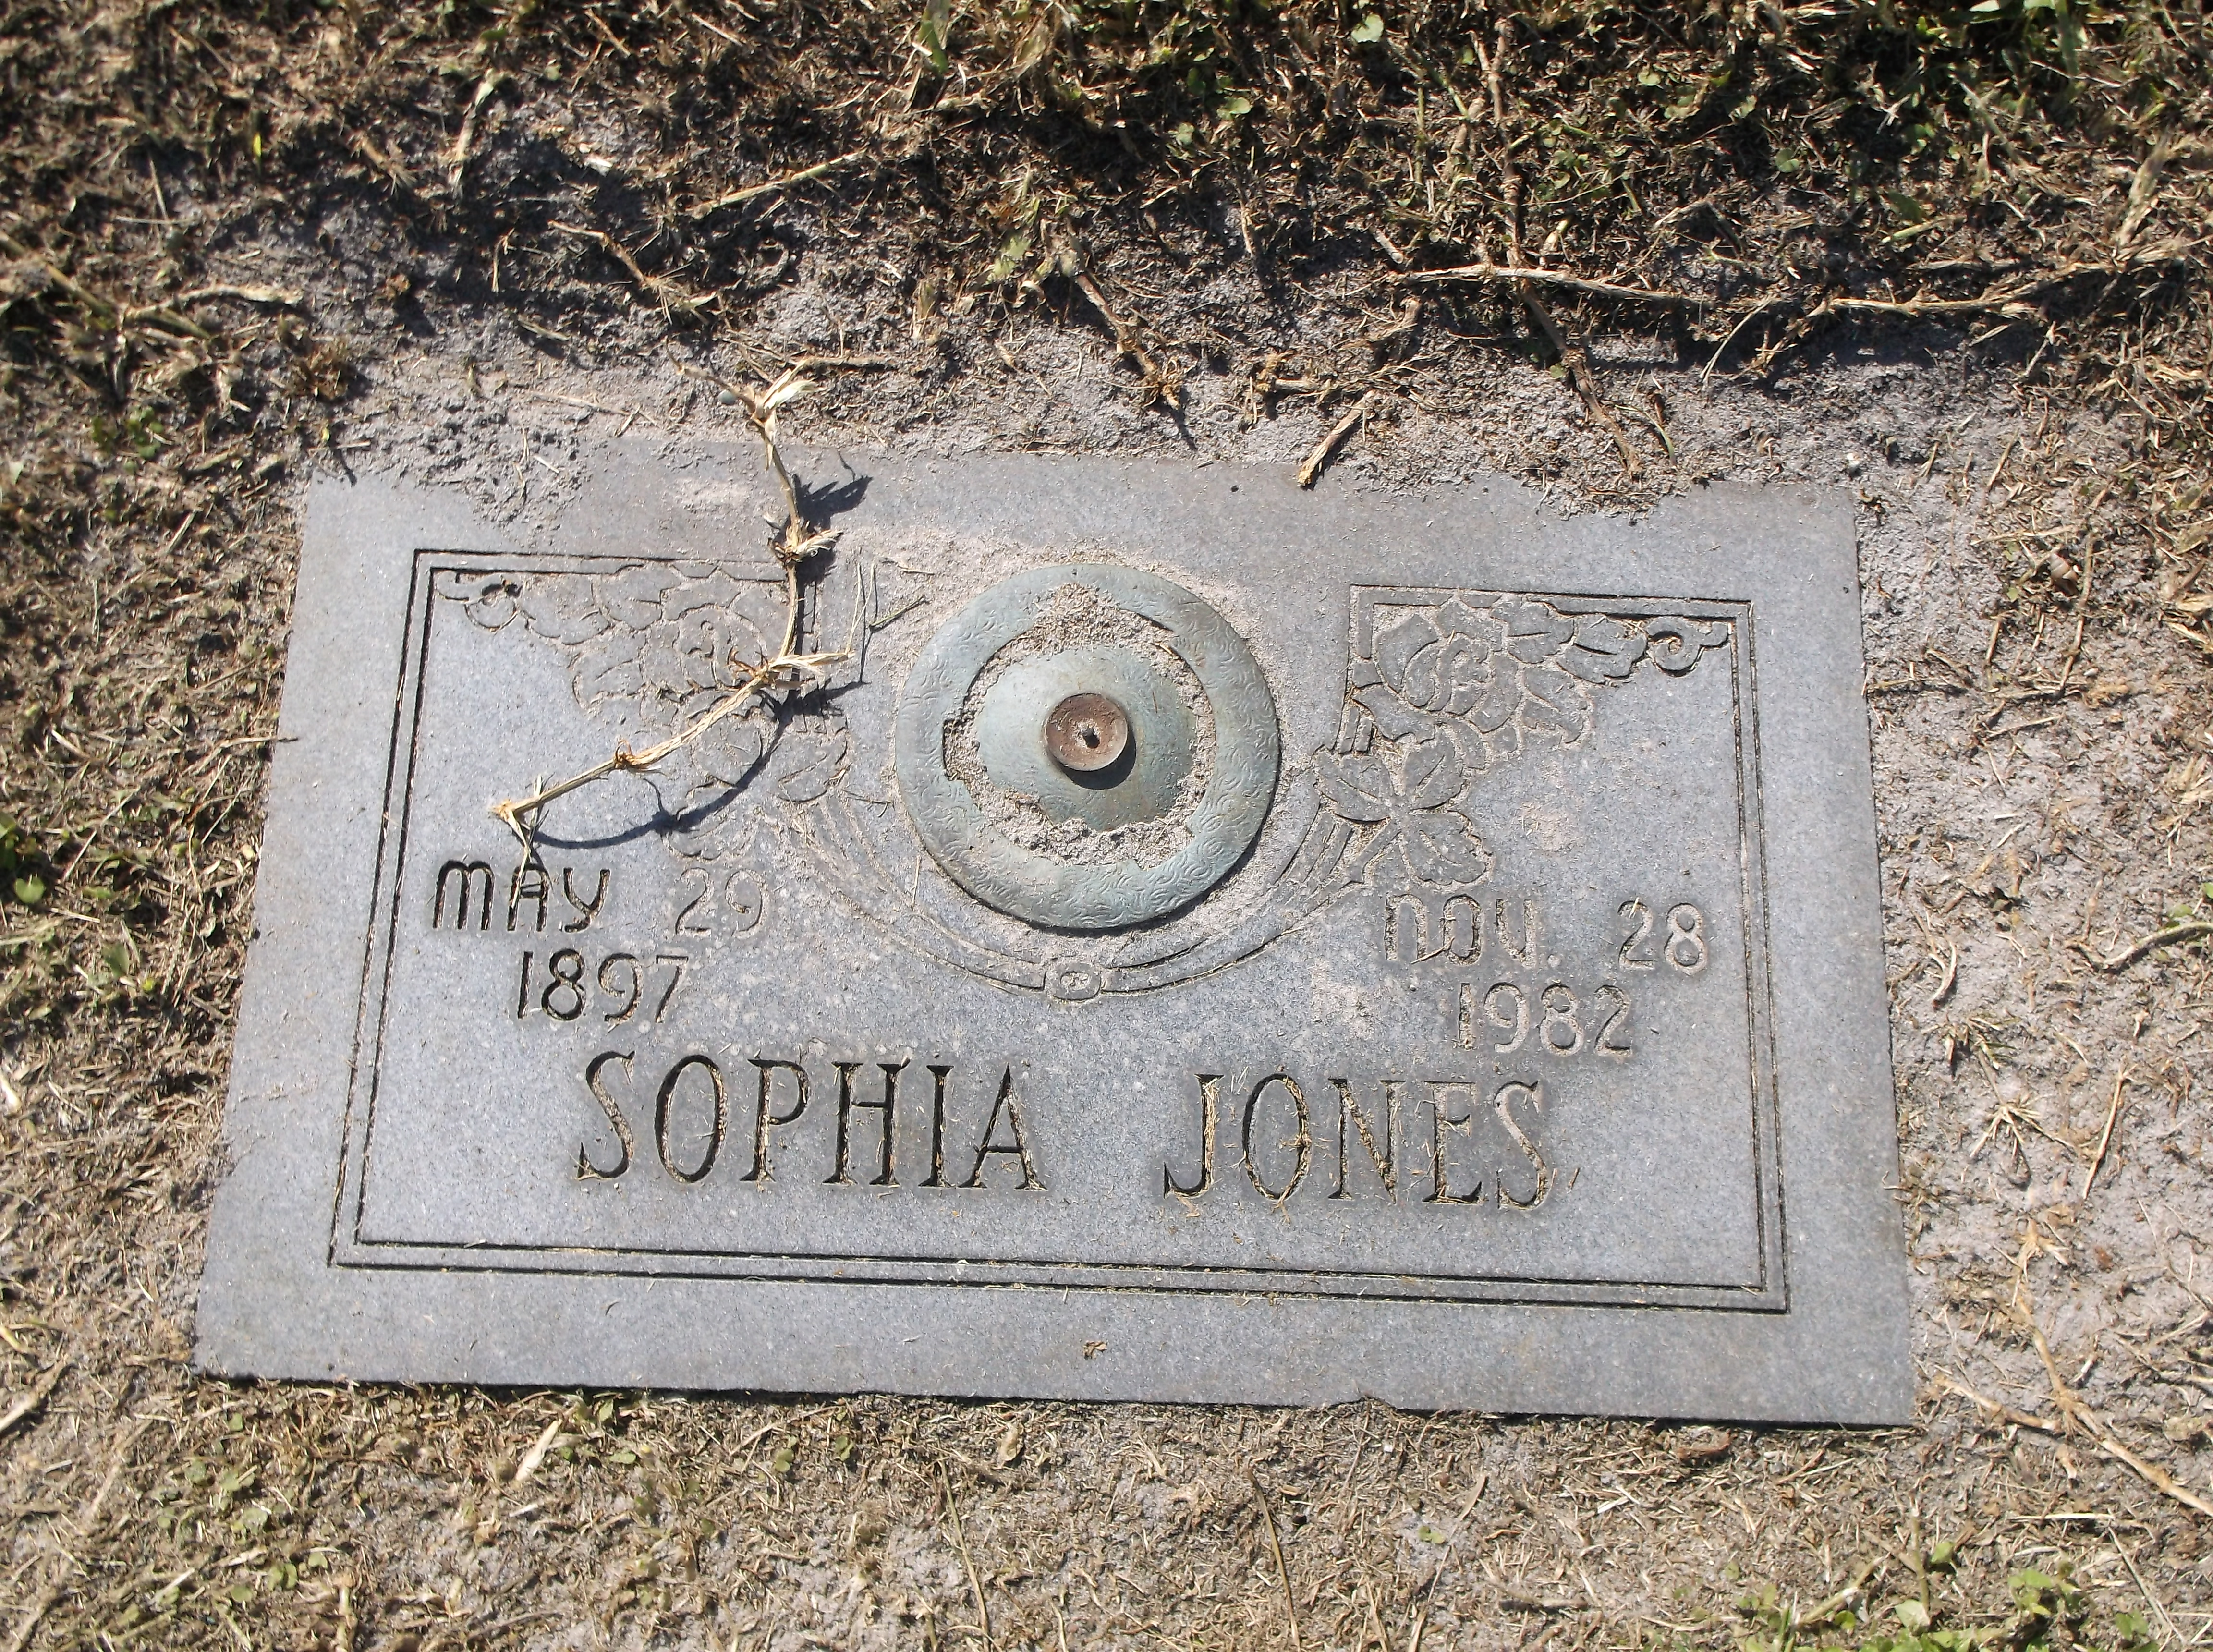 Sophia Jones